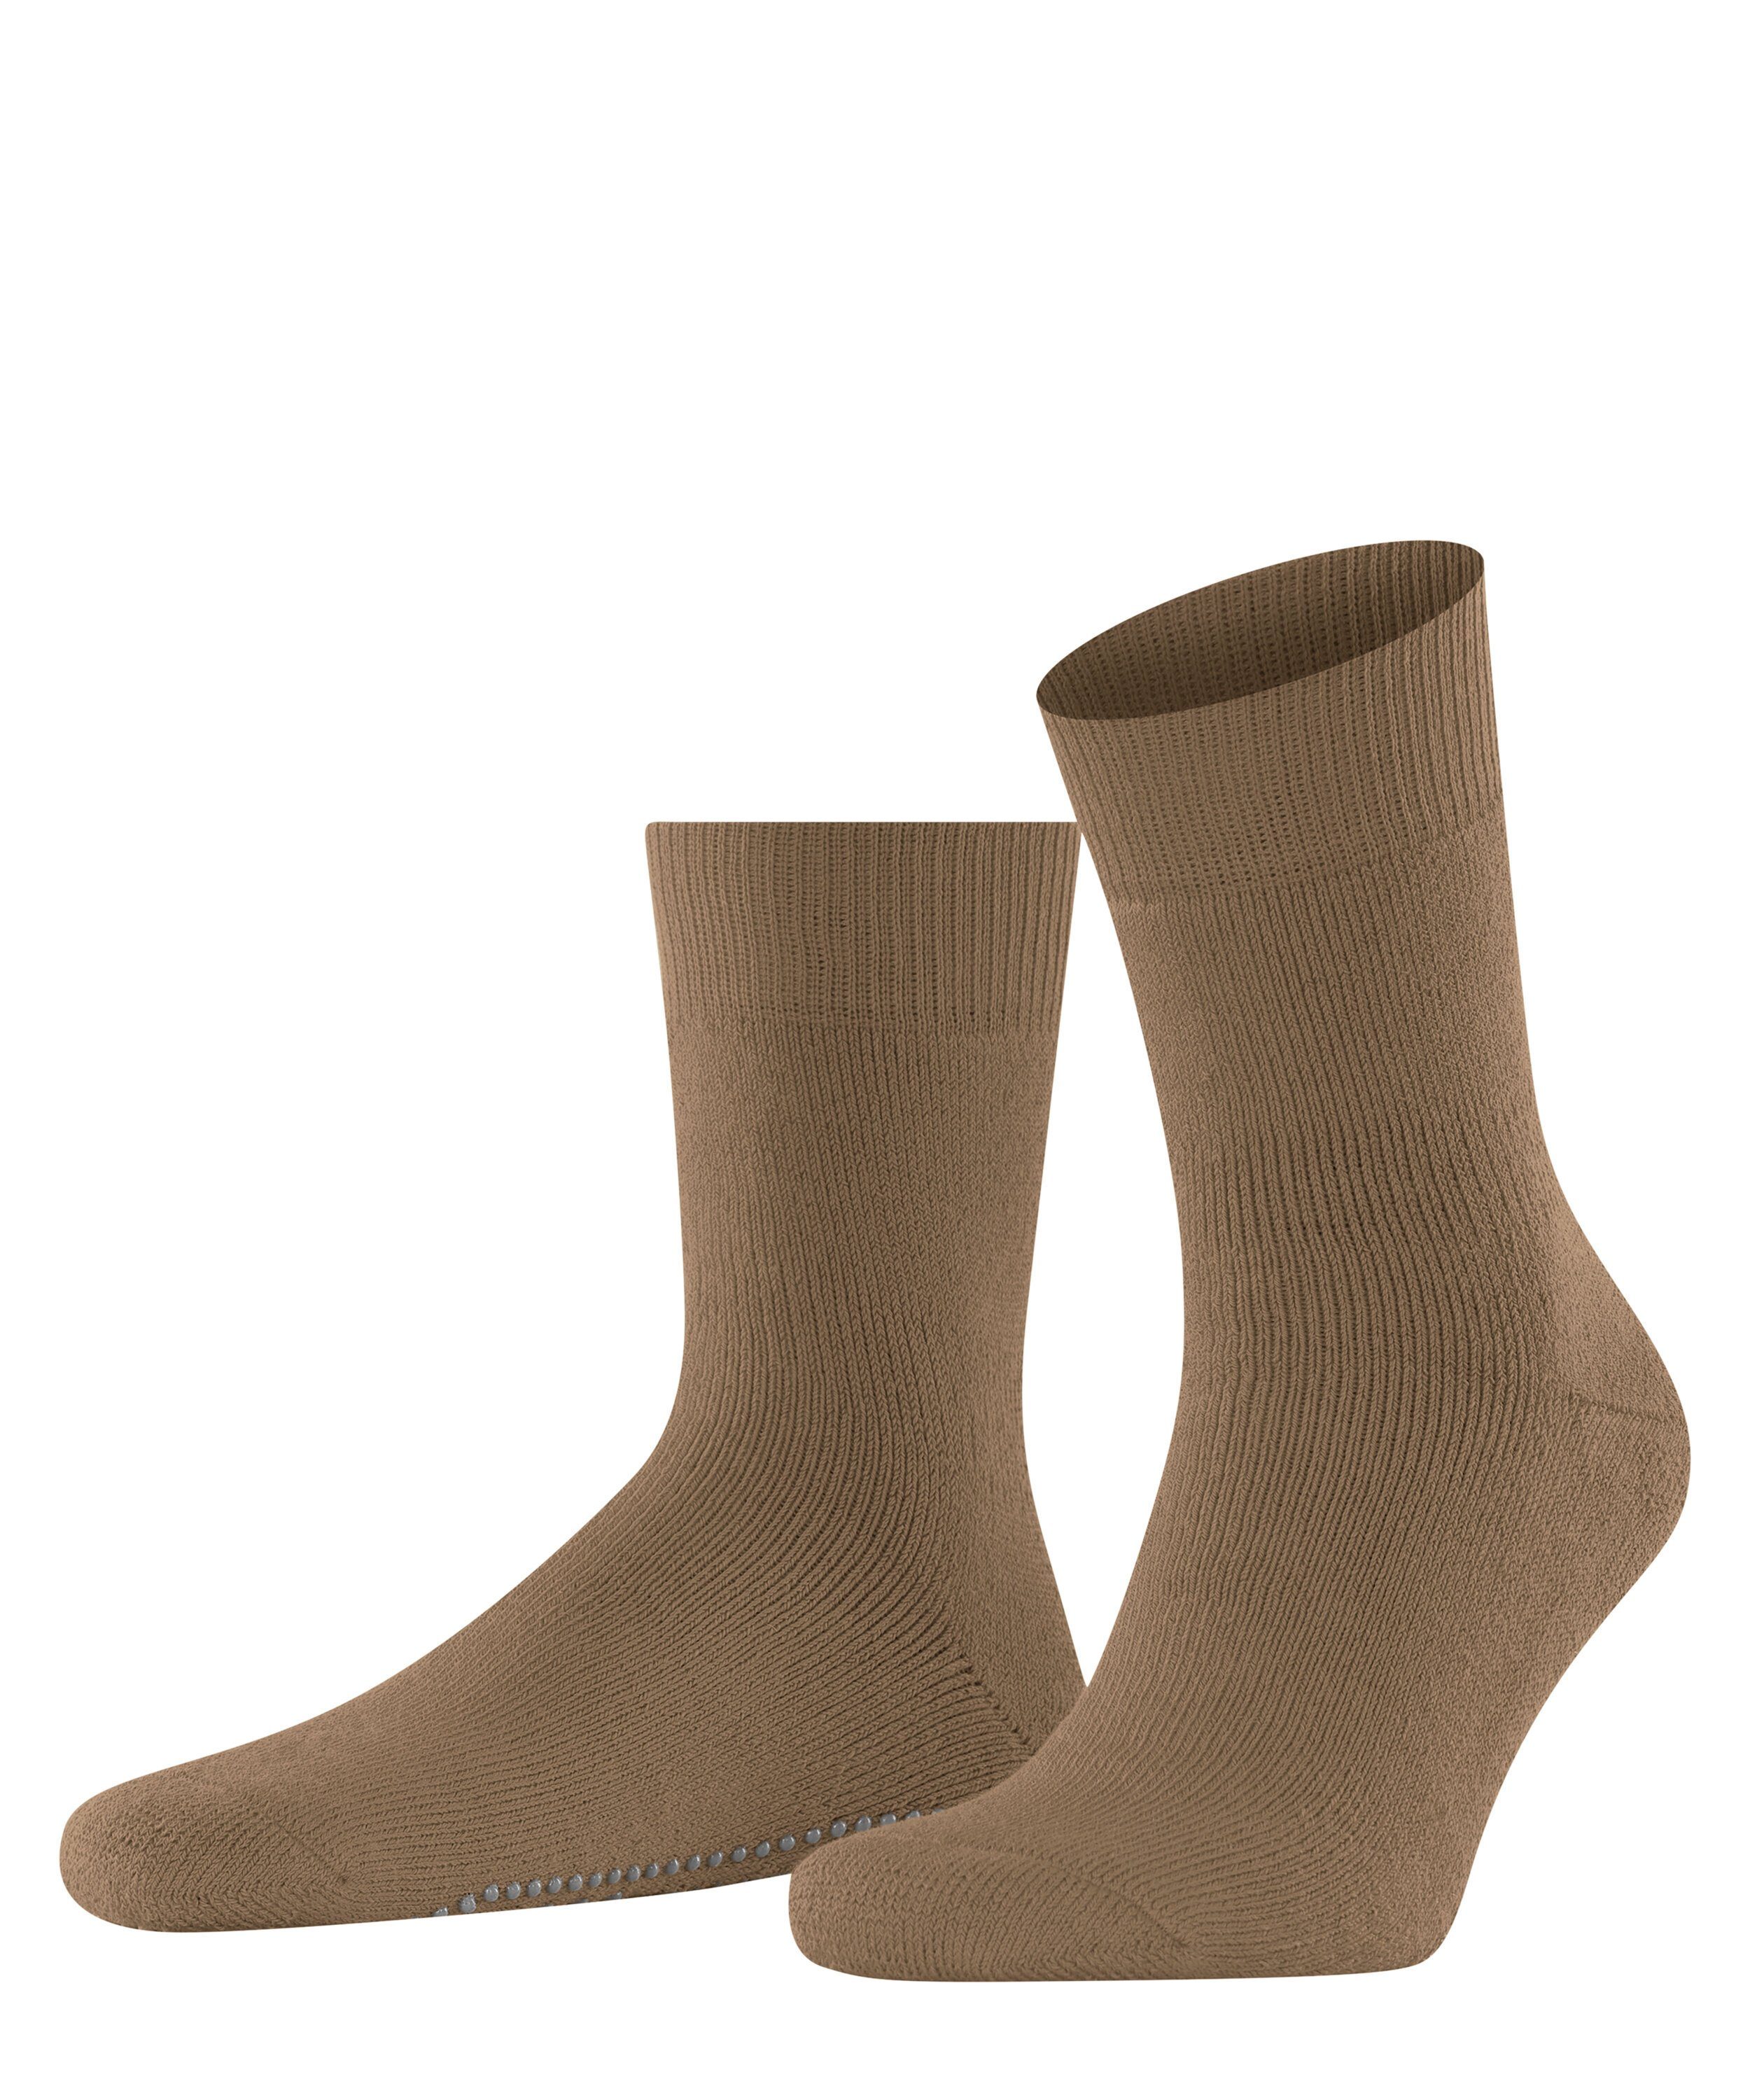 (1-Paar) Homepads wholegrain (5017) FALKE Socken